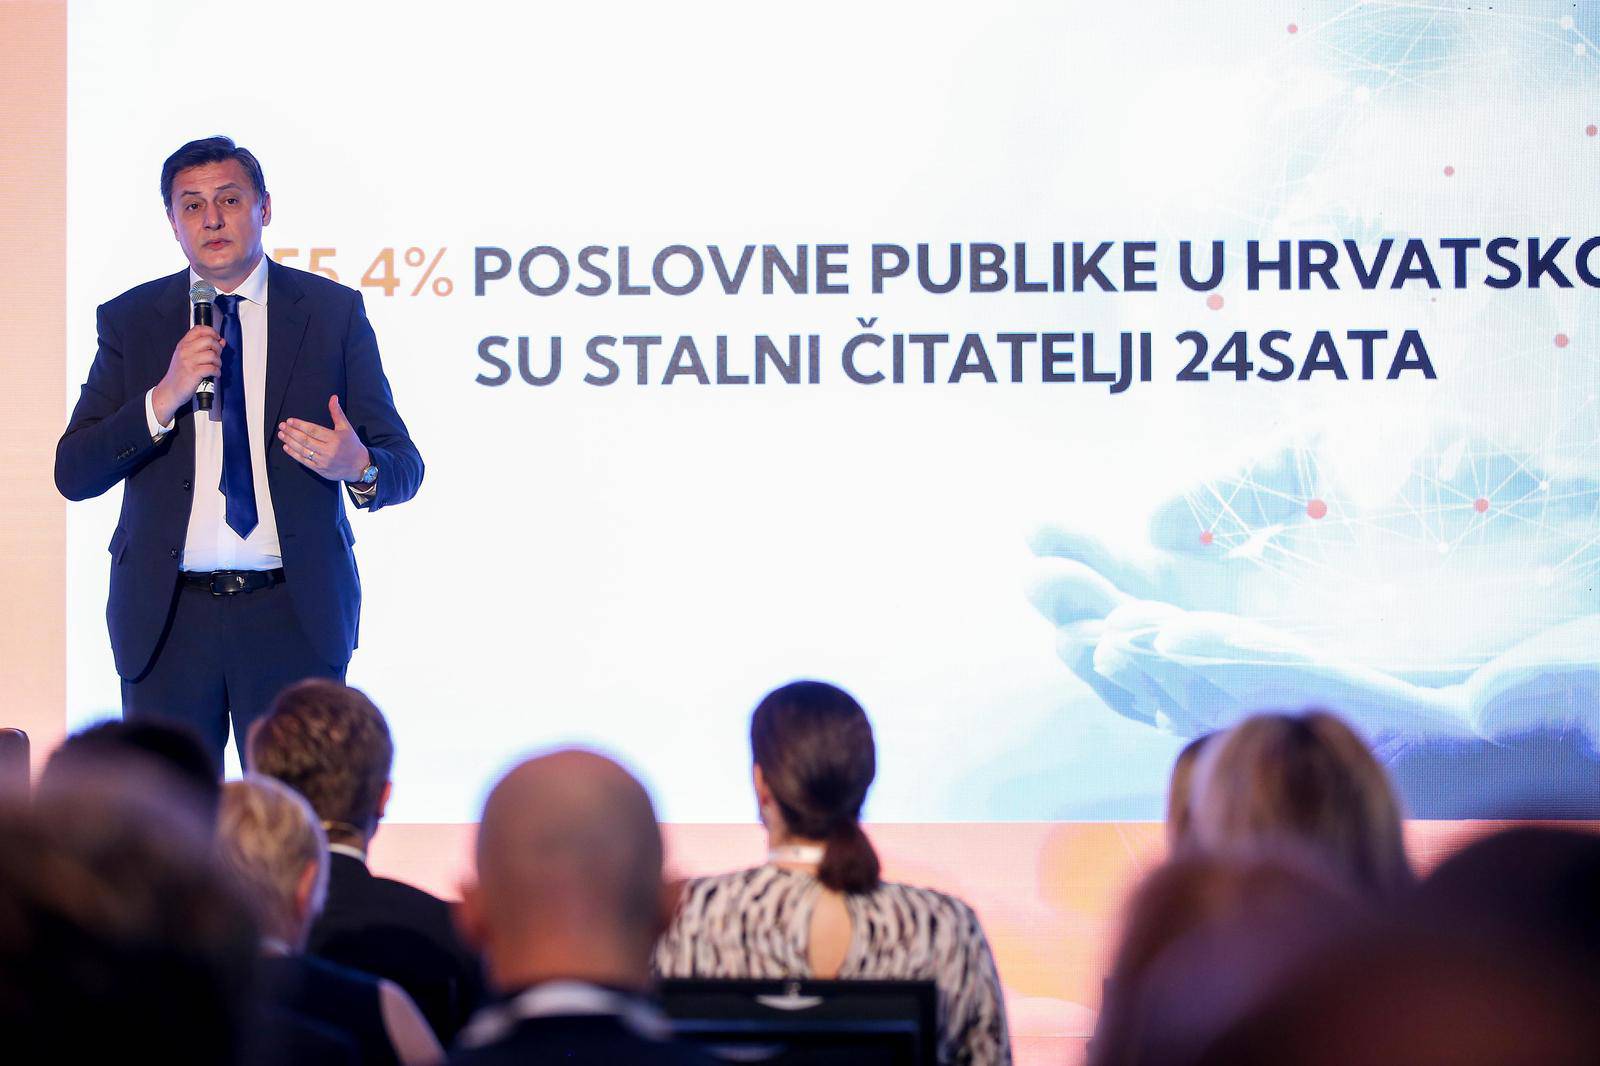 Konferencija Kvaka24: Hrvatska u novom ekonomskom okruženju 